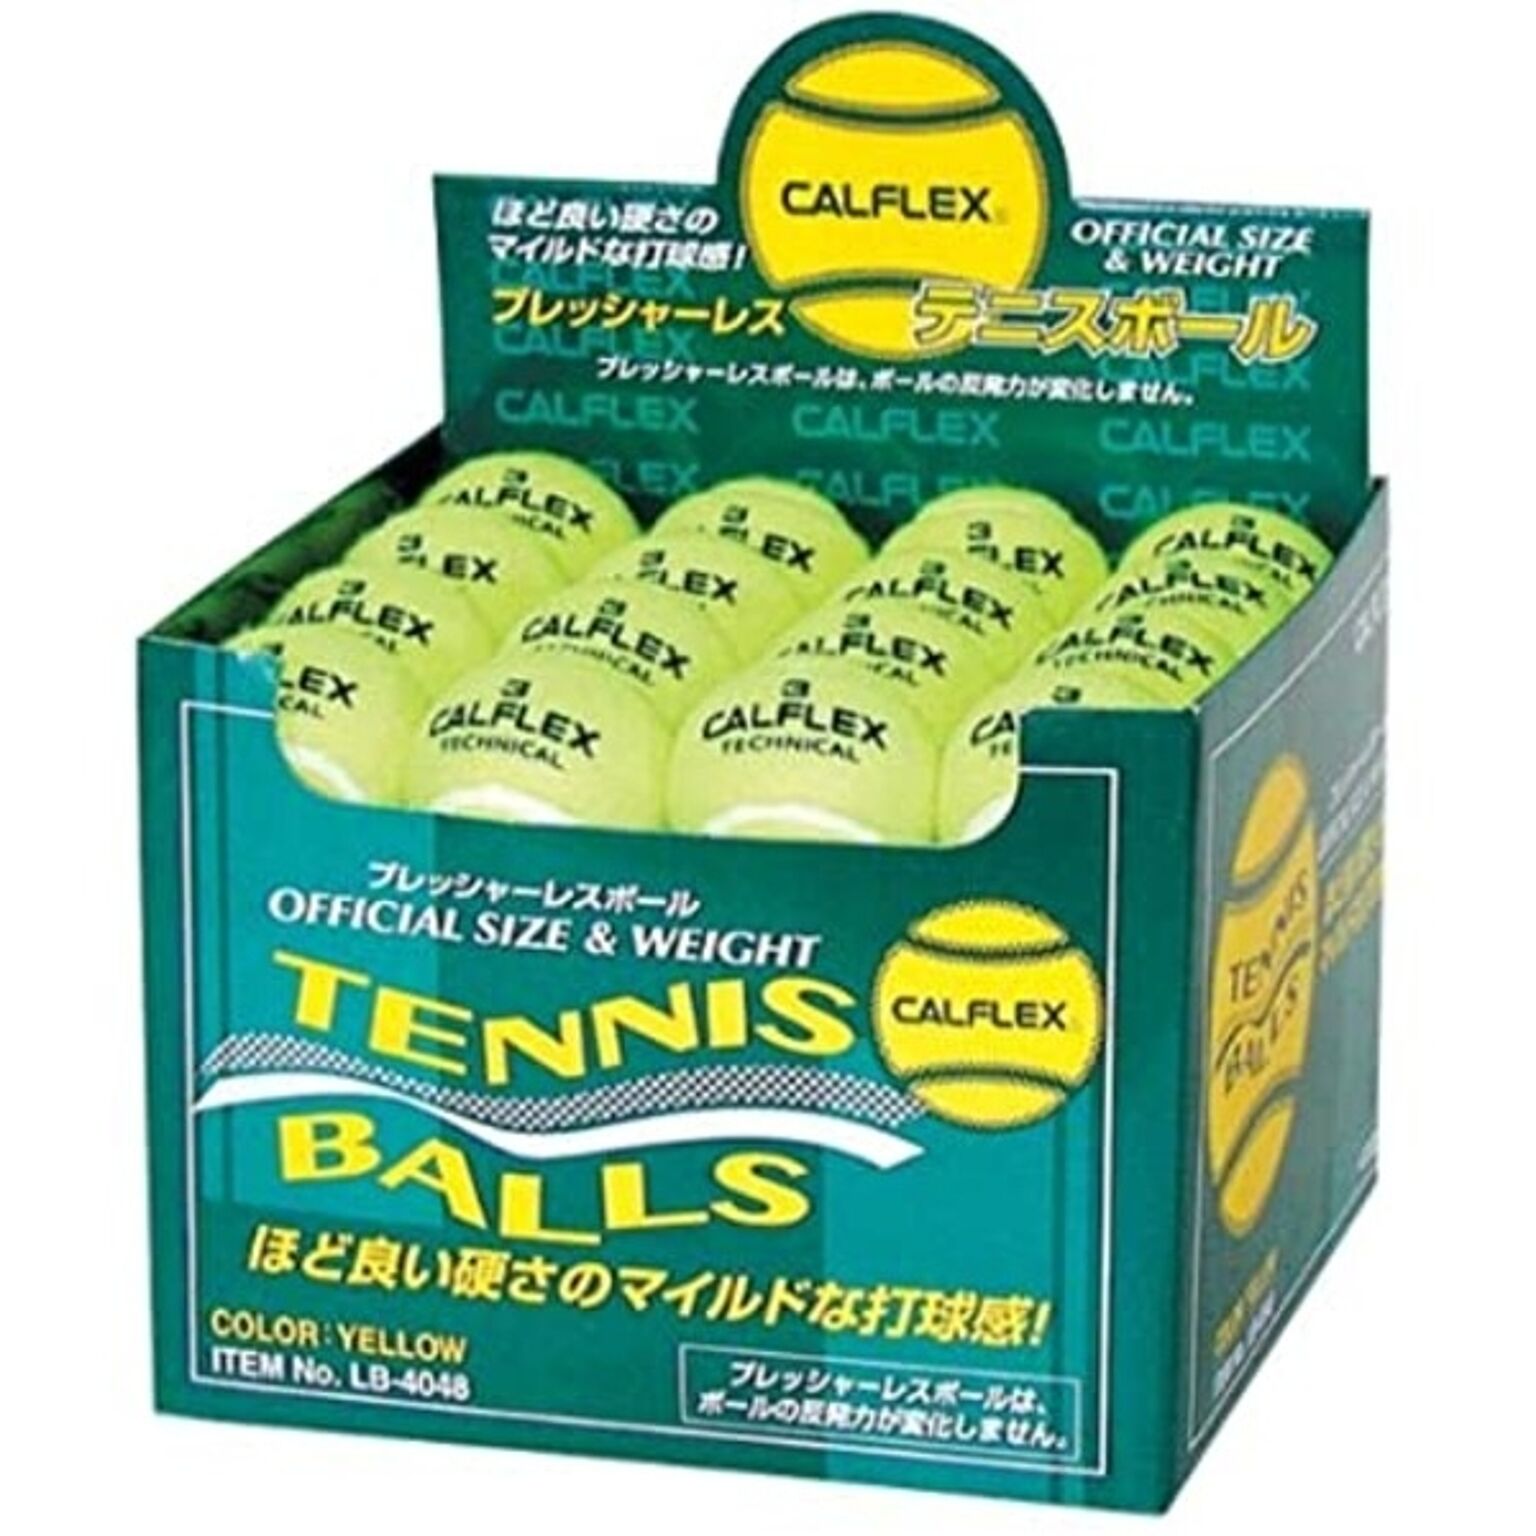 テニスボール ノンプレッシャー硬式テニスボール 48球